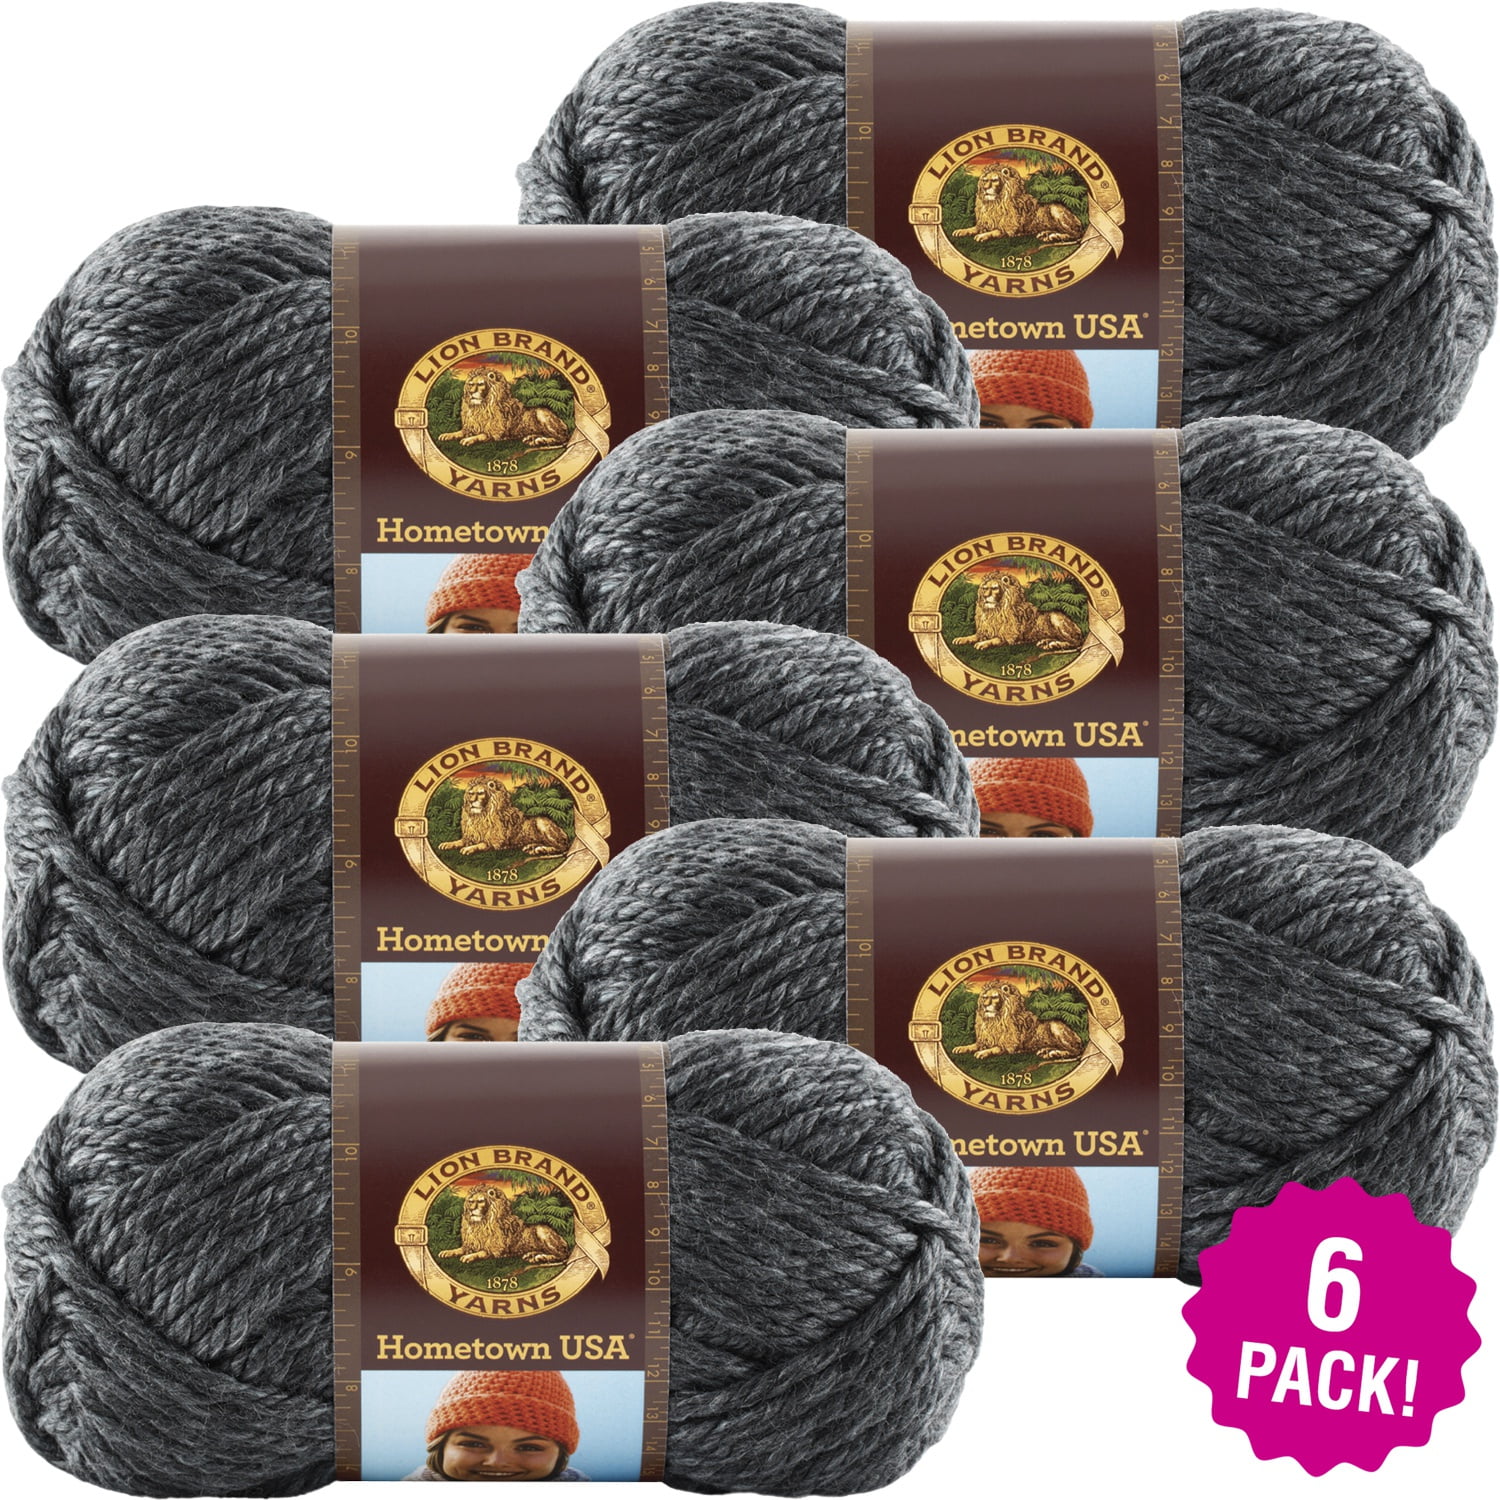 Lion Brand Yarn 756-719 Comfy Cotton Blend Yarn, Blueberry Muffin (1  Skein/Ball) : : Home & Kitchen